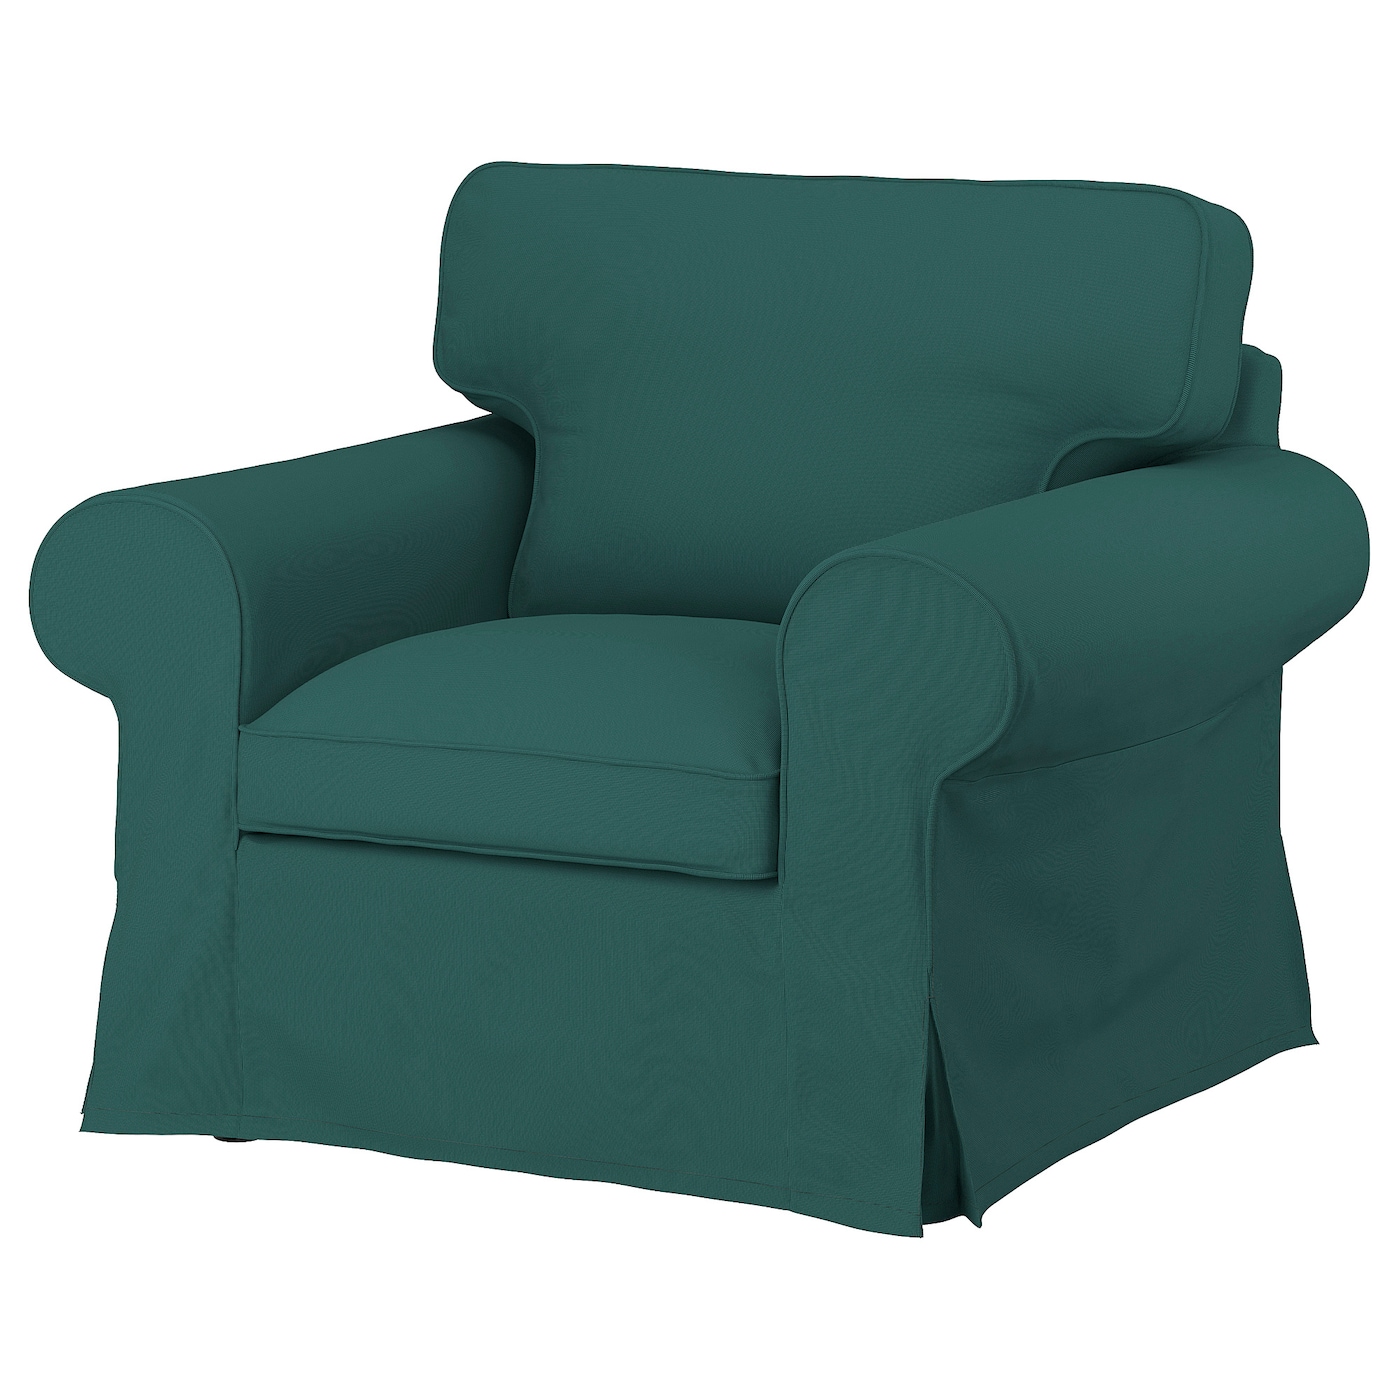 EKTORP Bezug für Sessel  -  - Möbel Ideen für dein Zuhause von Home Trends. Möbel Trends von Social Media Influencer für dein Skandi Zuhause.